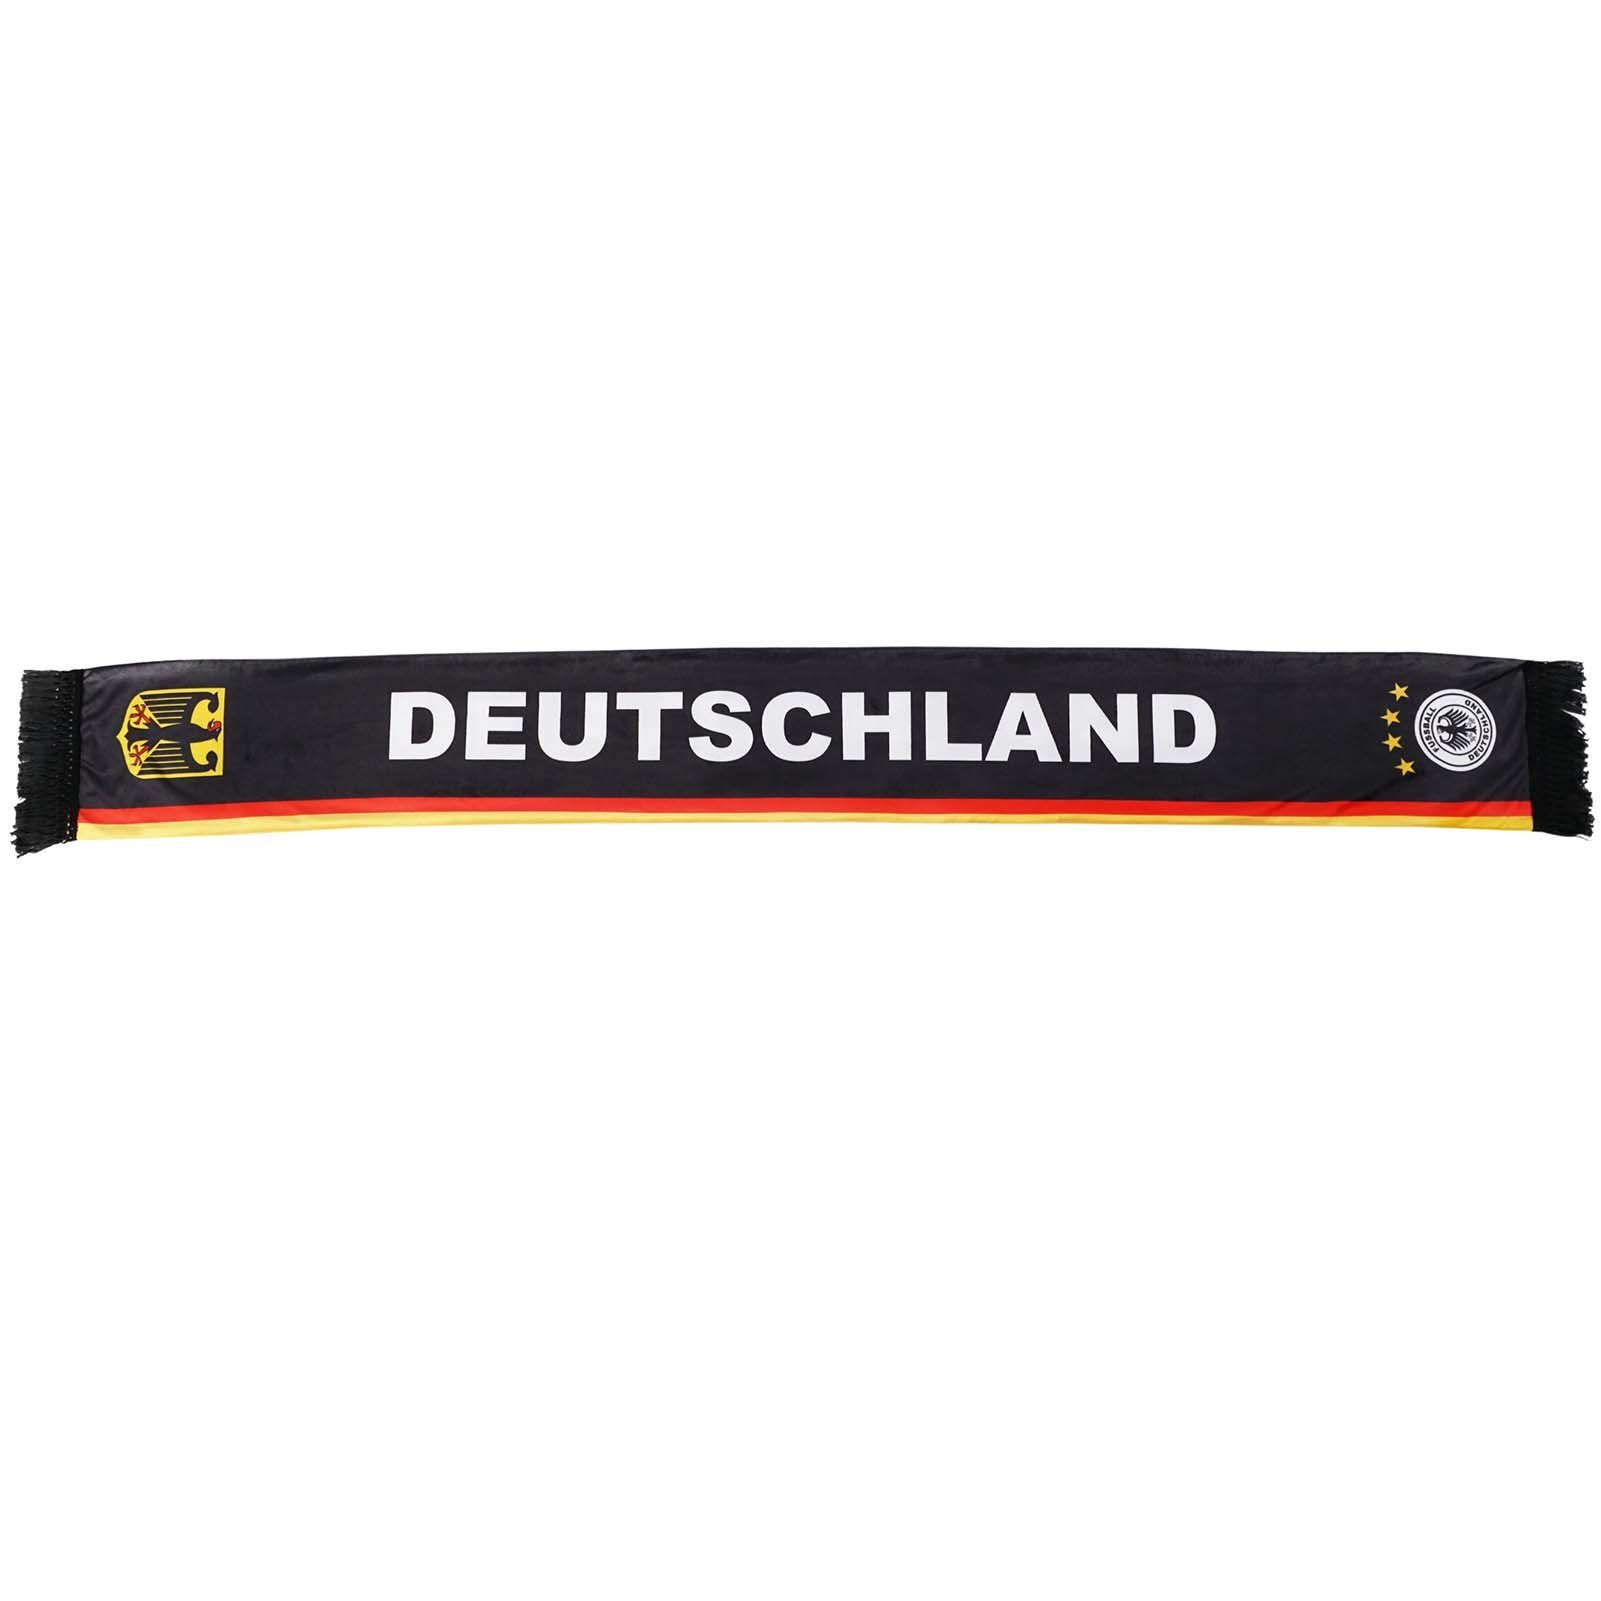 Schal, (Schal) Deutschland Schal 2022, Schirmmütze Fußball Fußball WM 2022 für WM Deutschland GalaxyCat Nationalteam Fanschal,